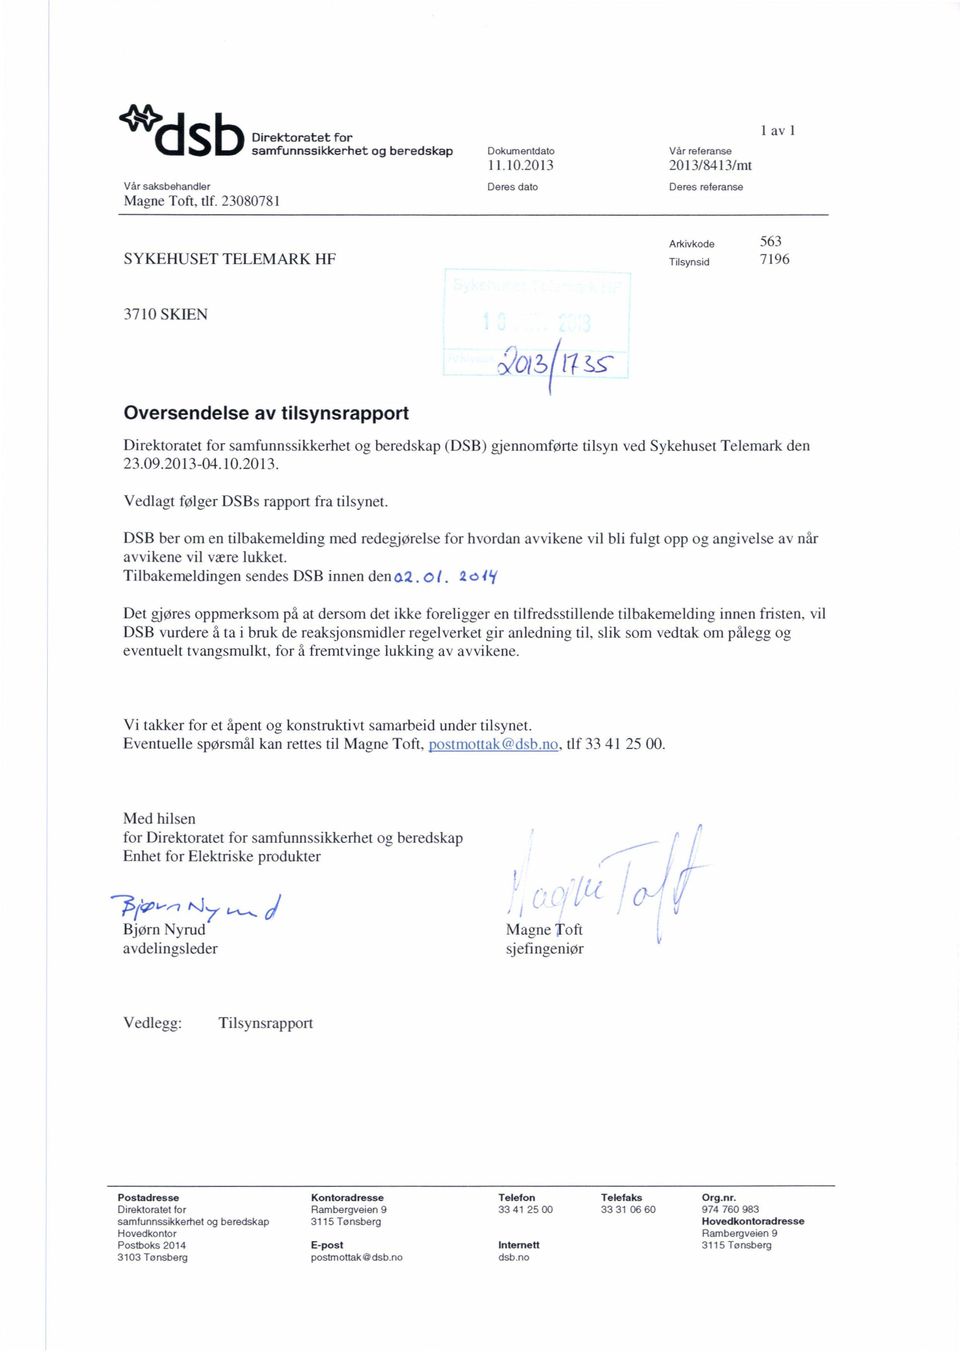 (DSB) gjennomførte tilsyn ved Sykehuset Telemark den 23.09.2013-04.10.2013. Vedlagt føl ger DSBs rapport fra tilsynet.